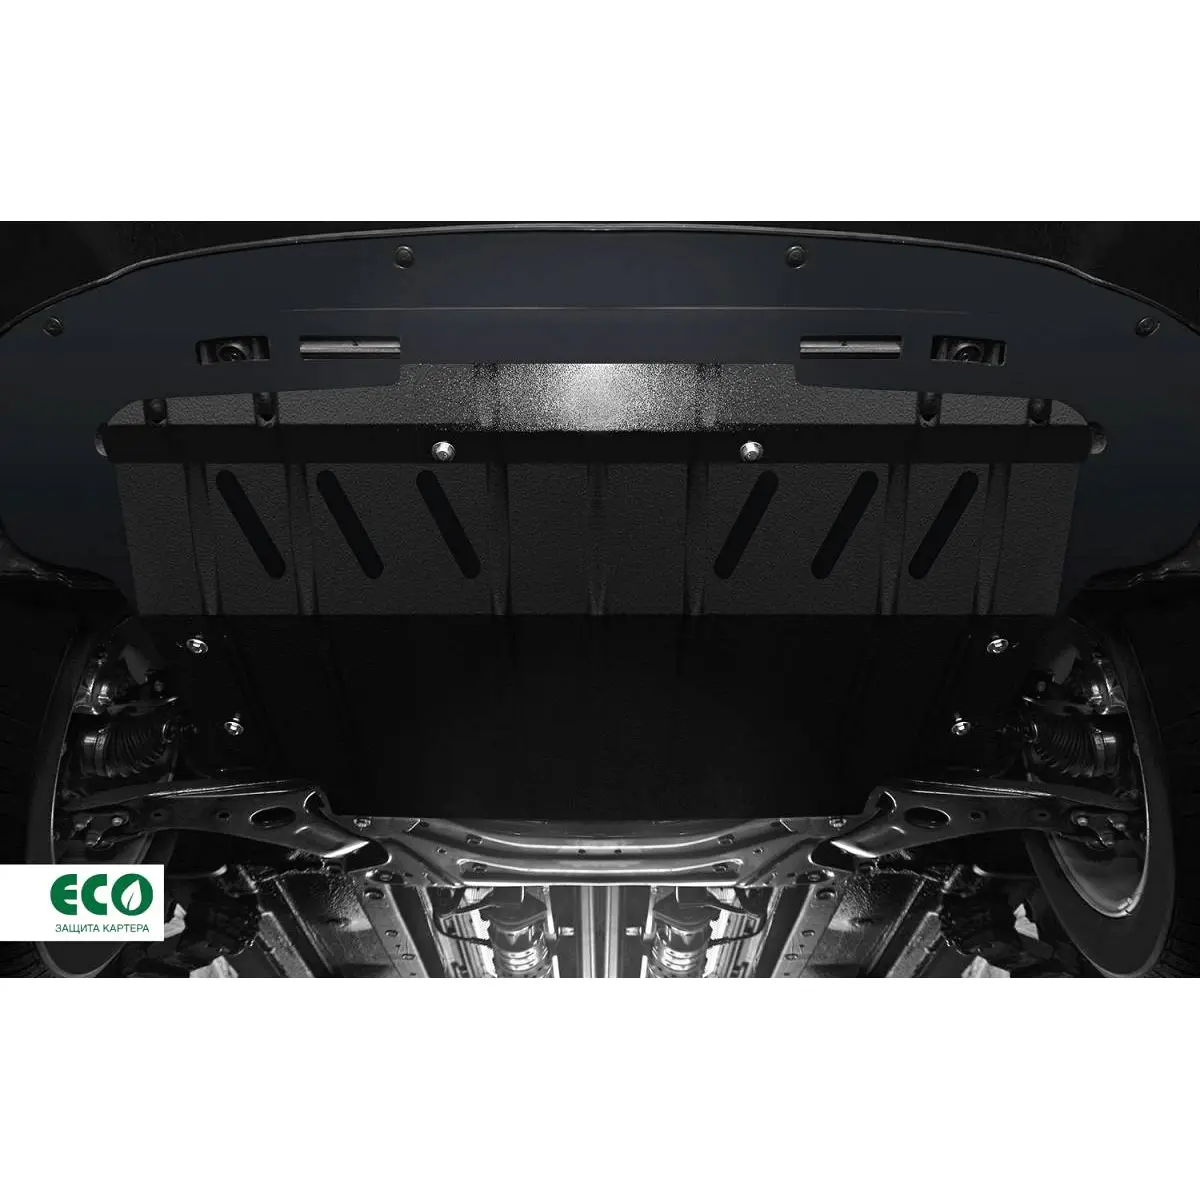 Комплект крепежа защиты картера Eco 4ETRWD eco4835022 24A 7OD 1437099153 изображение 3